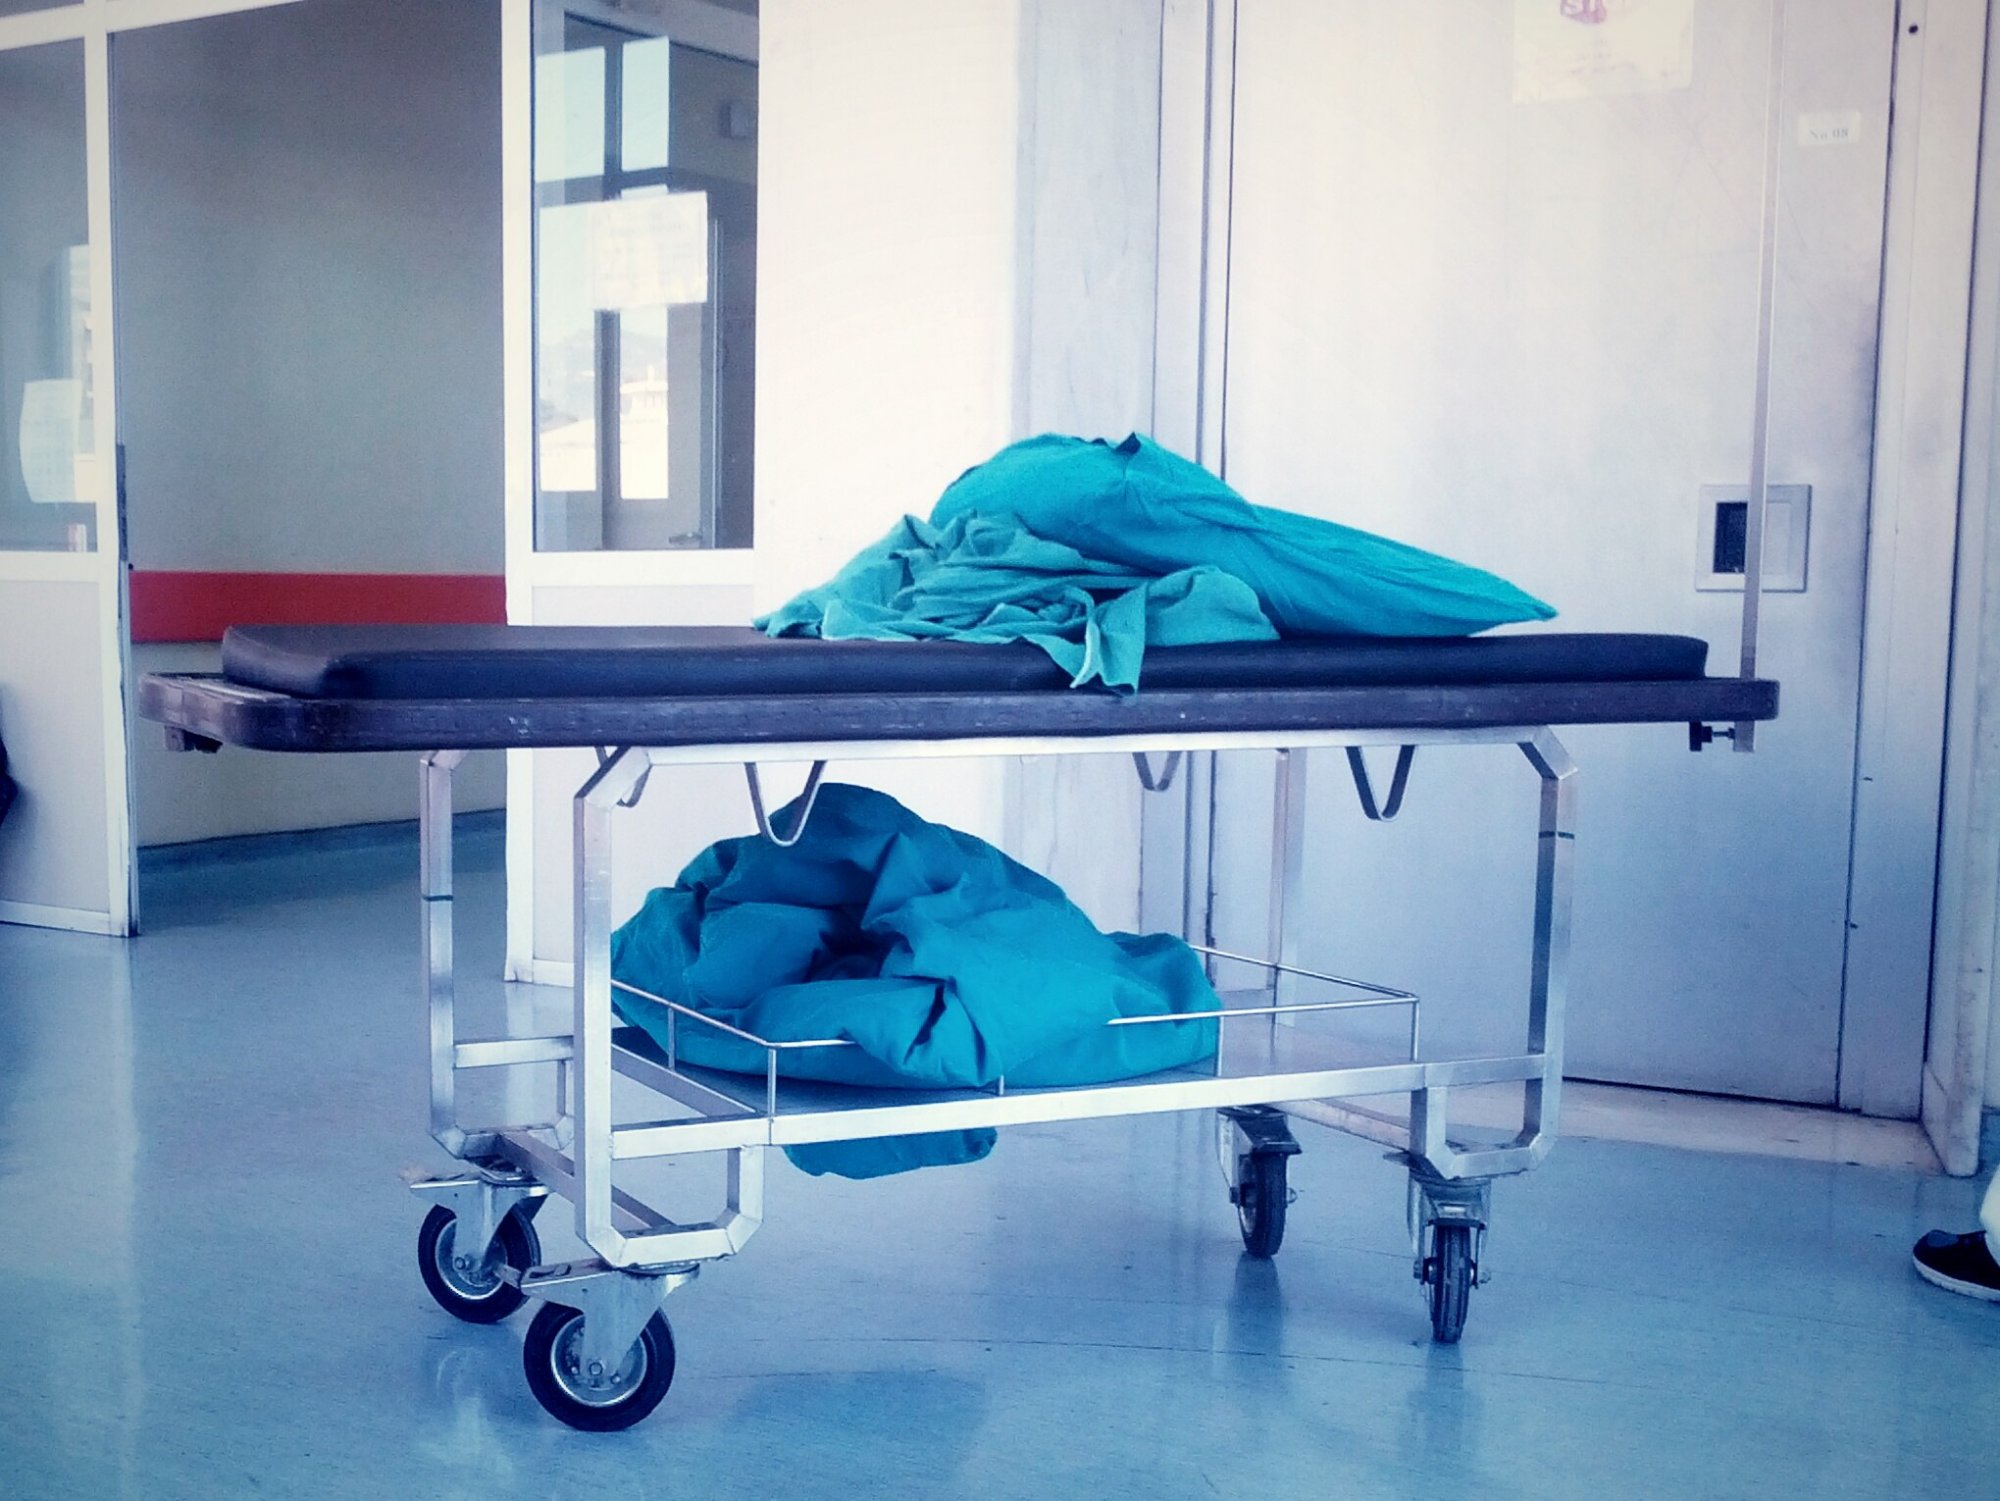 Πάτρα: Σοκ με τον θάνατο 57χρονης γυναίκας - Έκανε λιποαναρρόφηση και λίγες ώρες μετά πέθανε